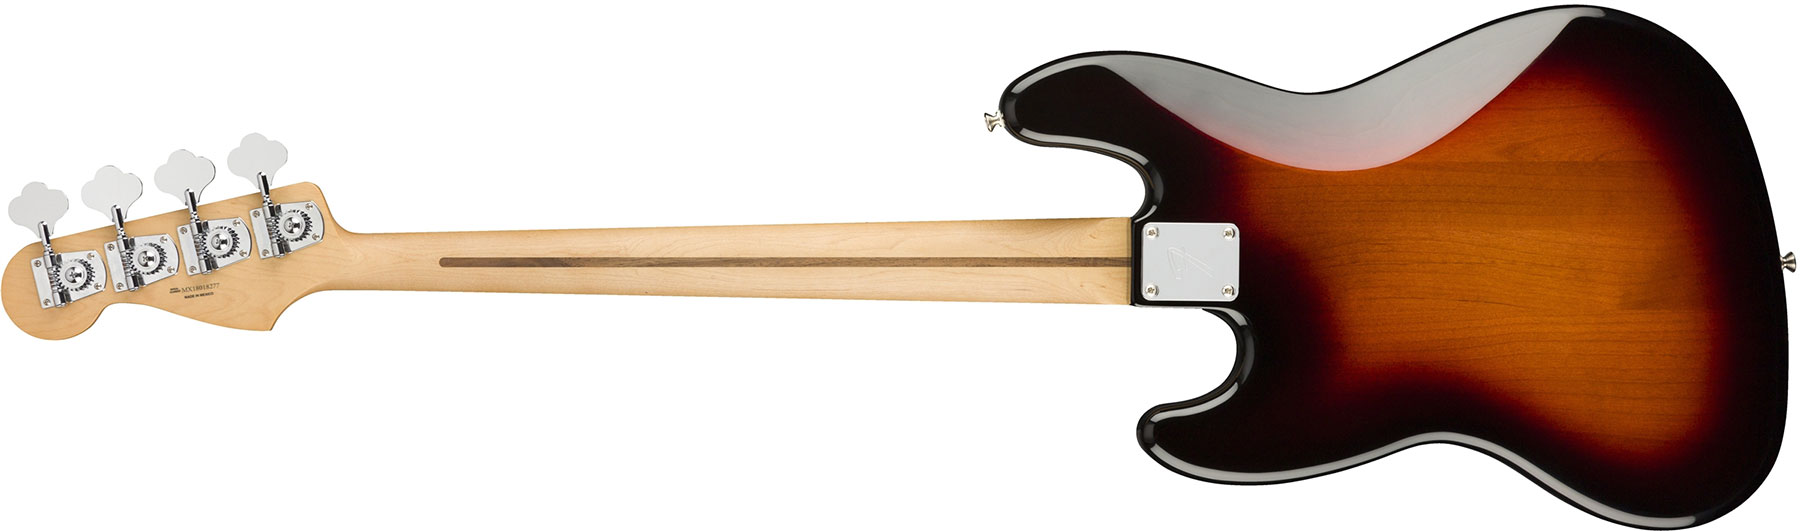 Fender Jazz Bass Player Mex Mn - 3-color Sunburst - Solid body elektrische bas - Variation 1